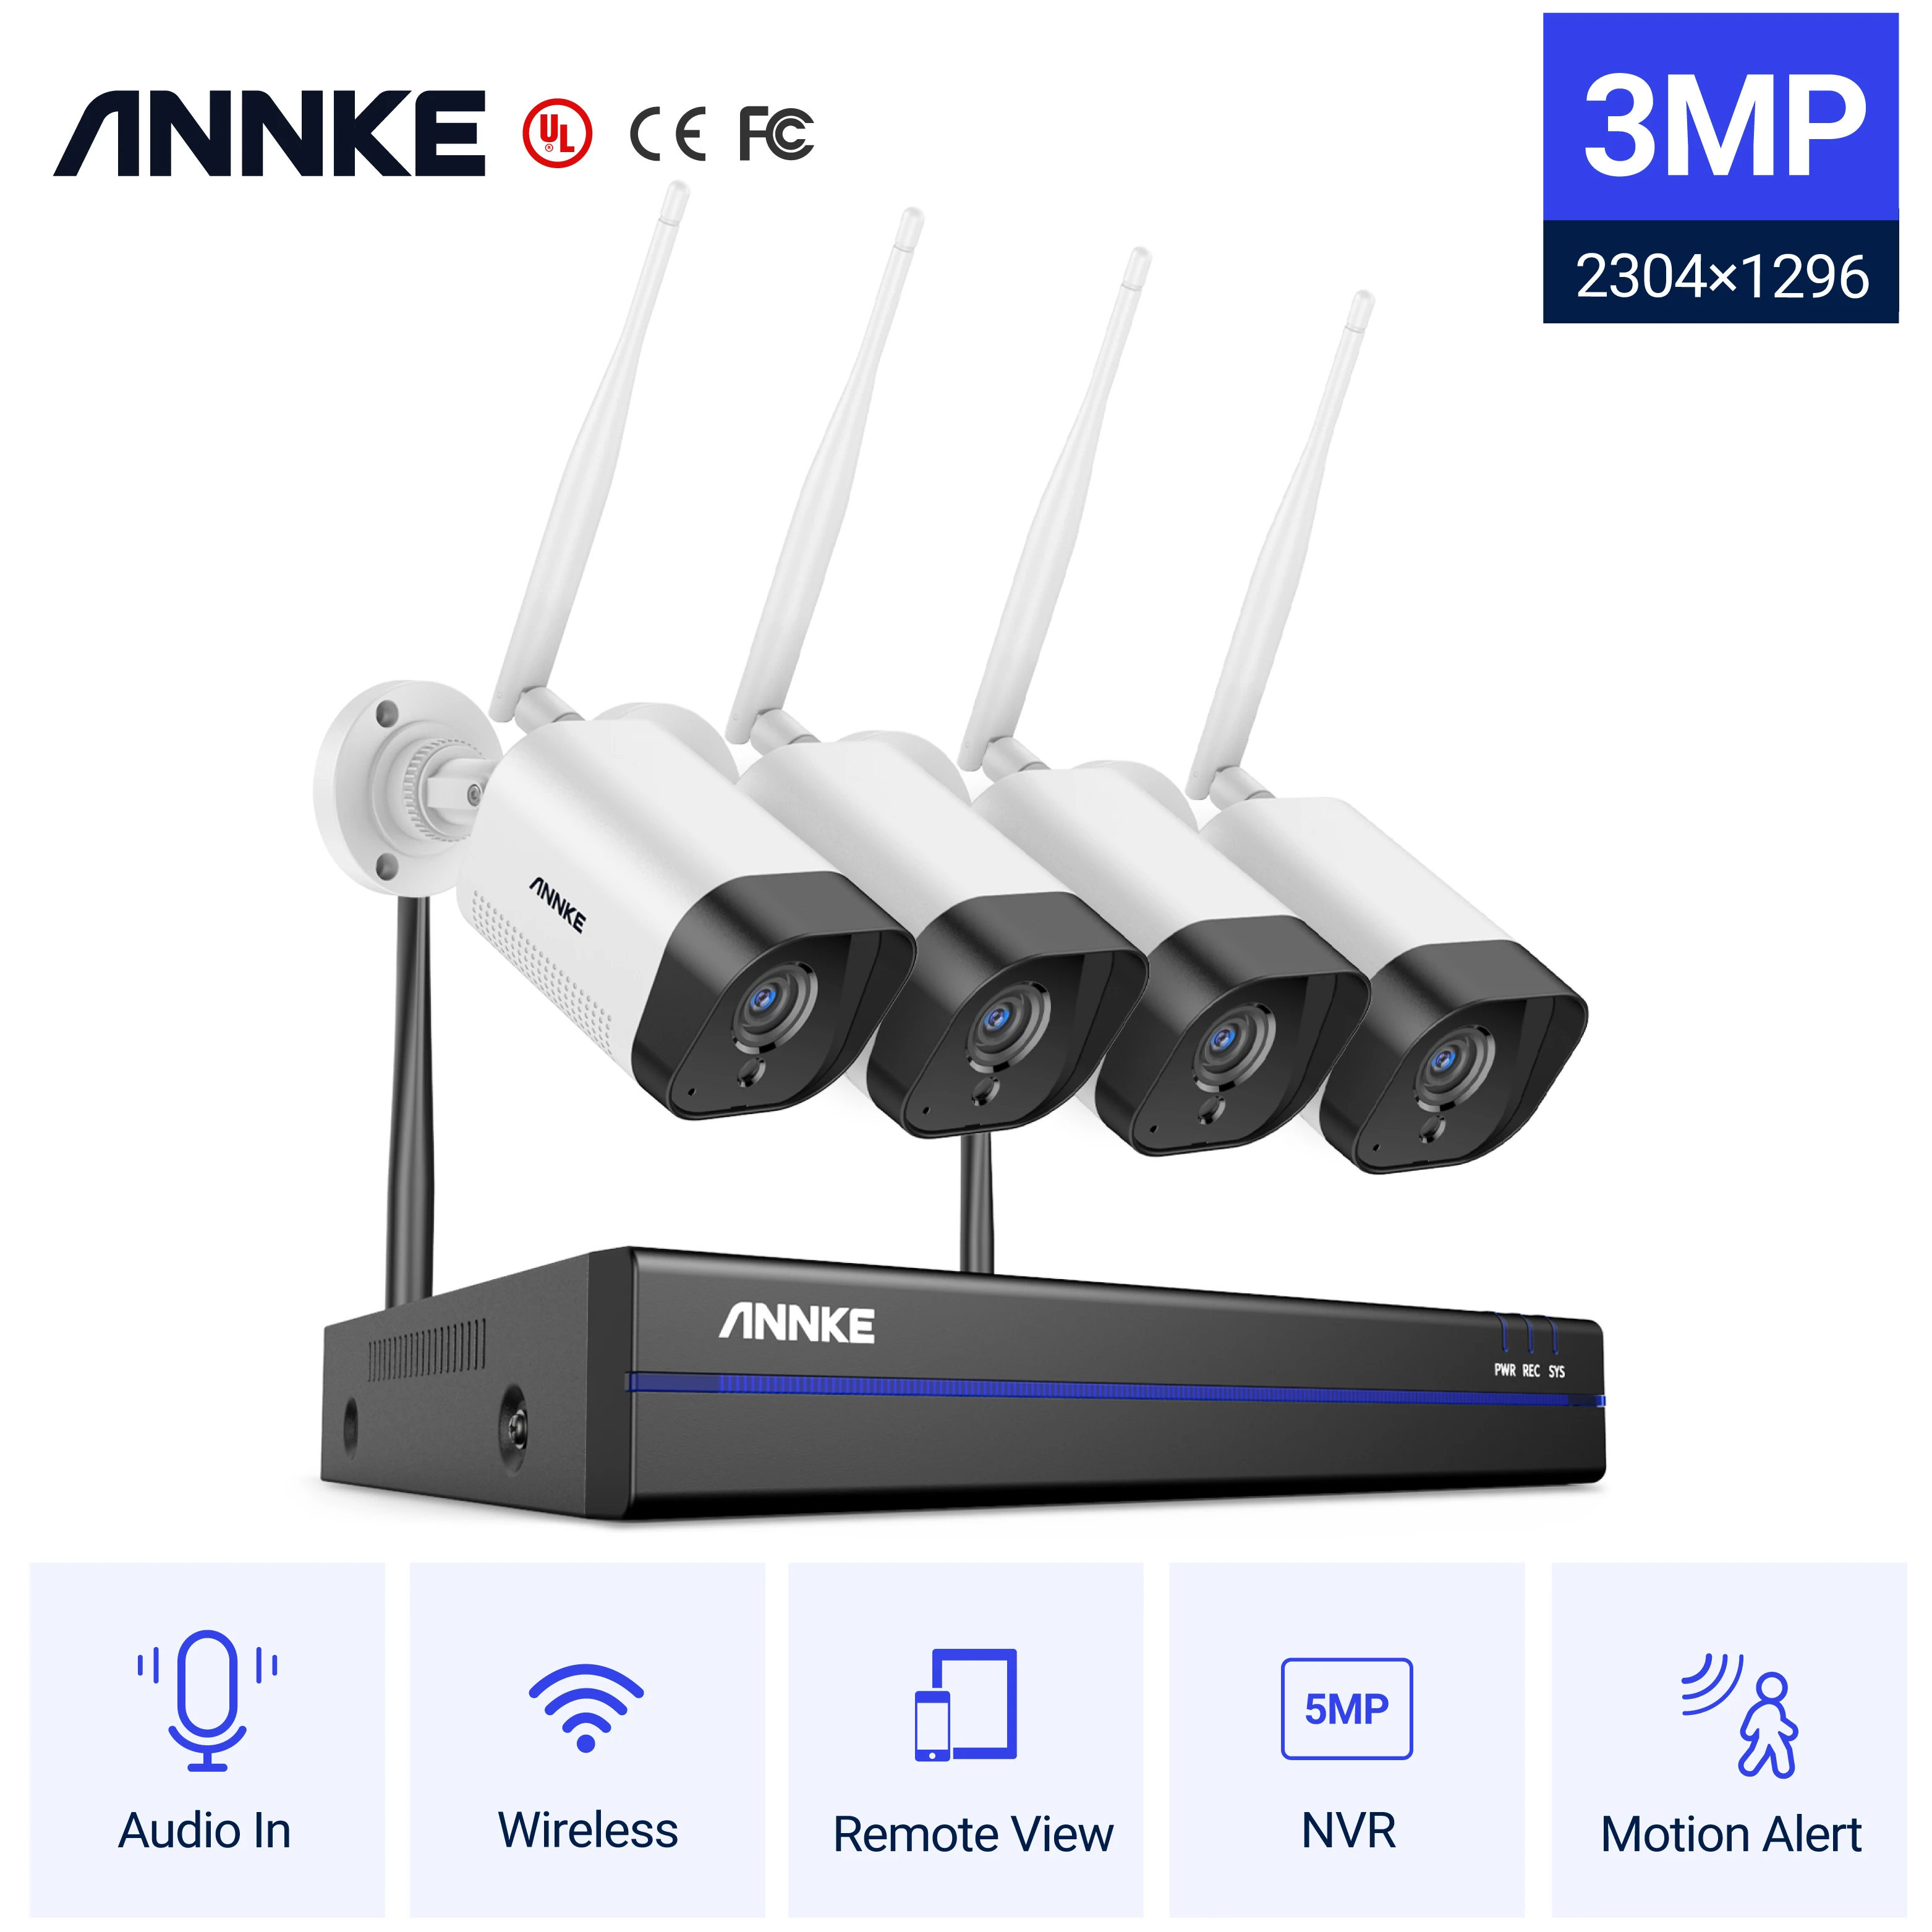 Tanio ANNKE 3MP WiFi System monitoringu